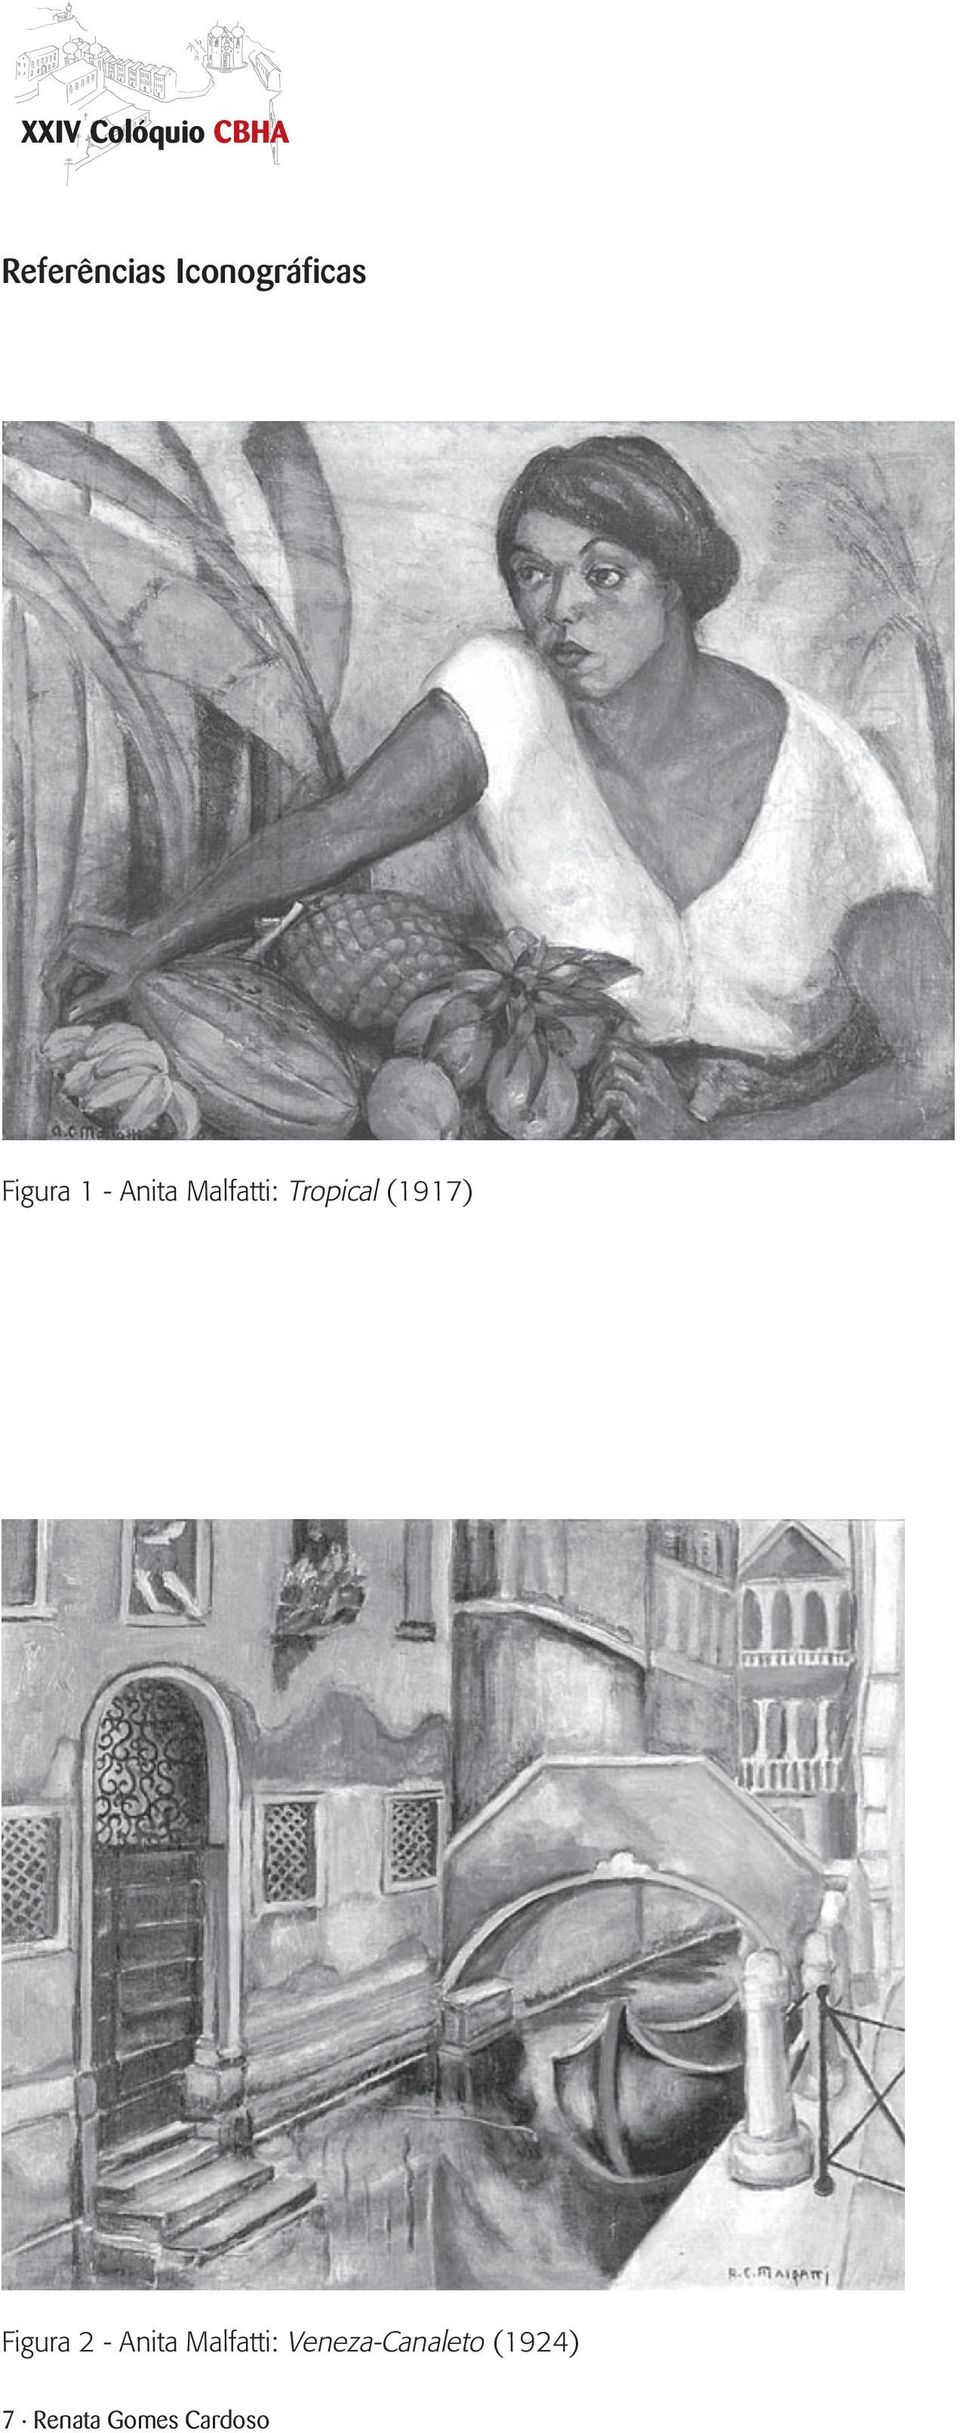 Figura 2 - Anita Malfatti: